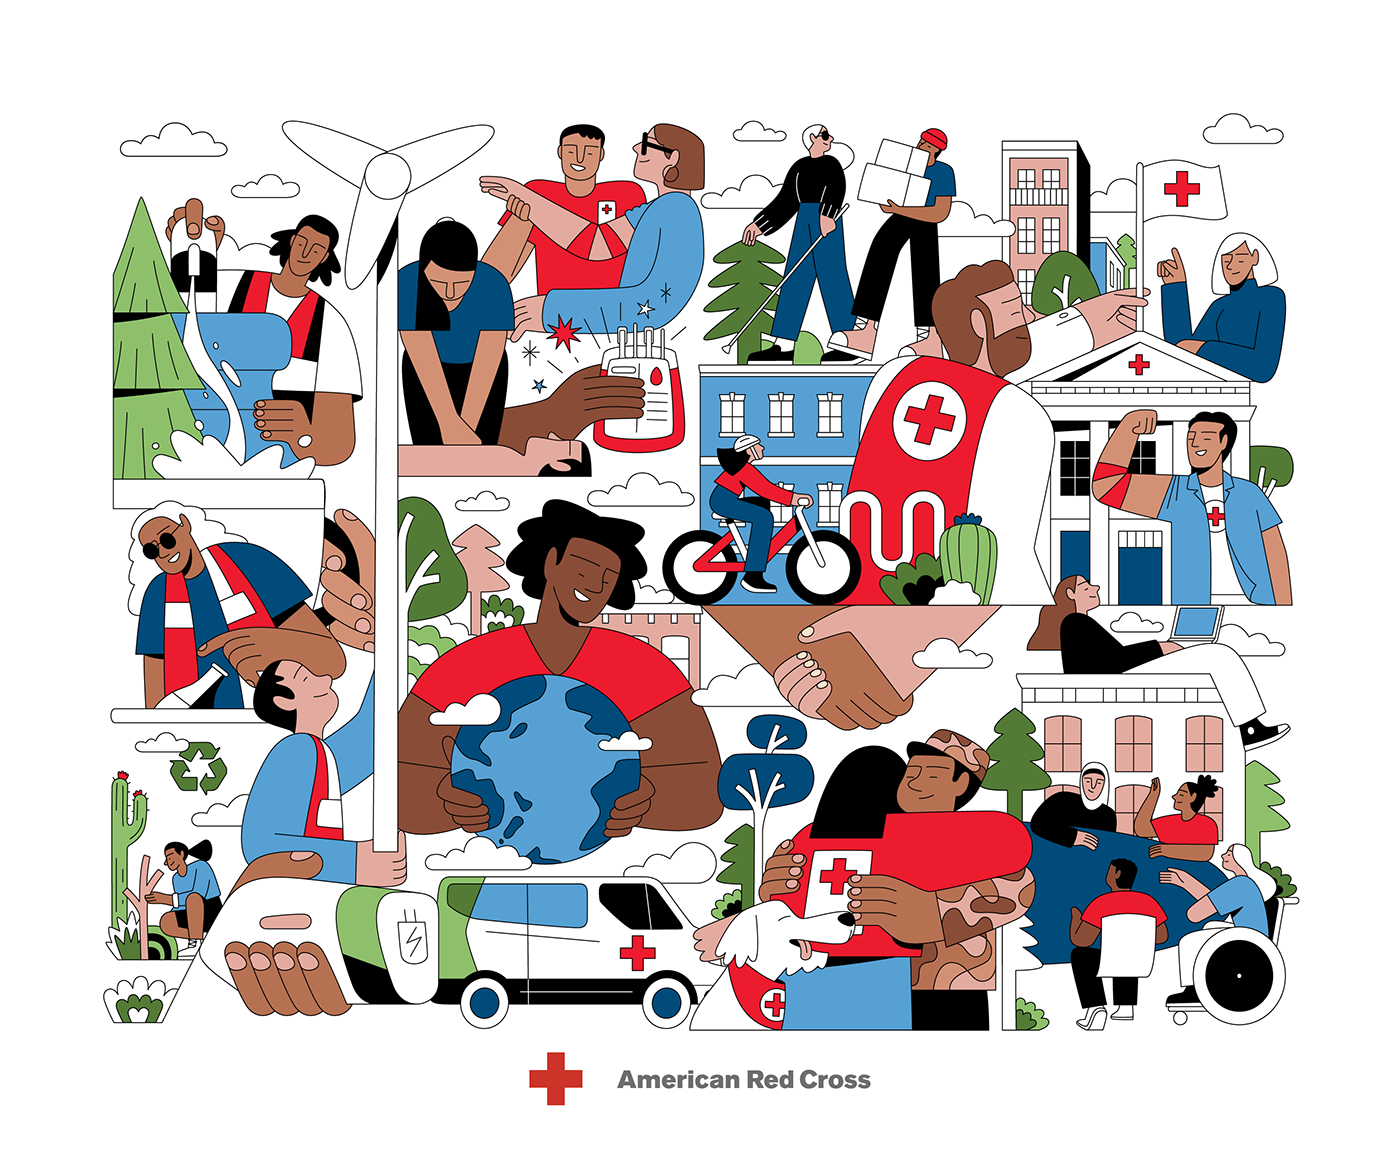 Sustainability ESG environment Mural Character design  Red Cross branding  adobe illustrator marketing   ILLUSTRATION 